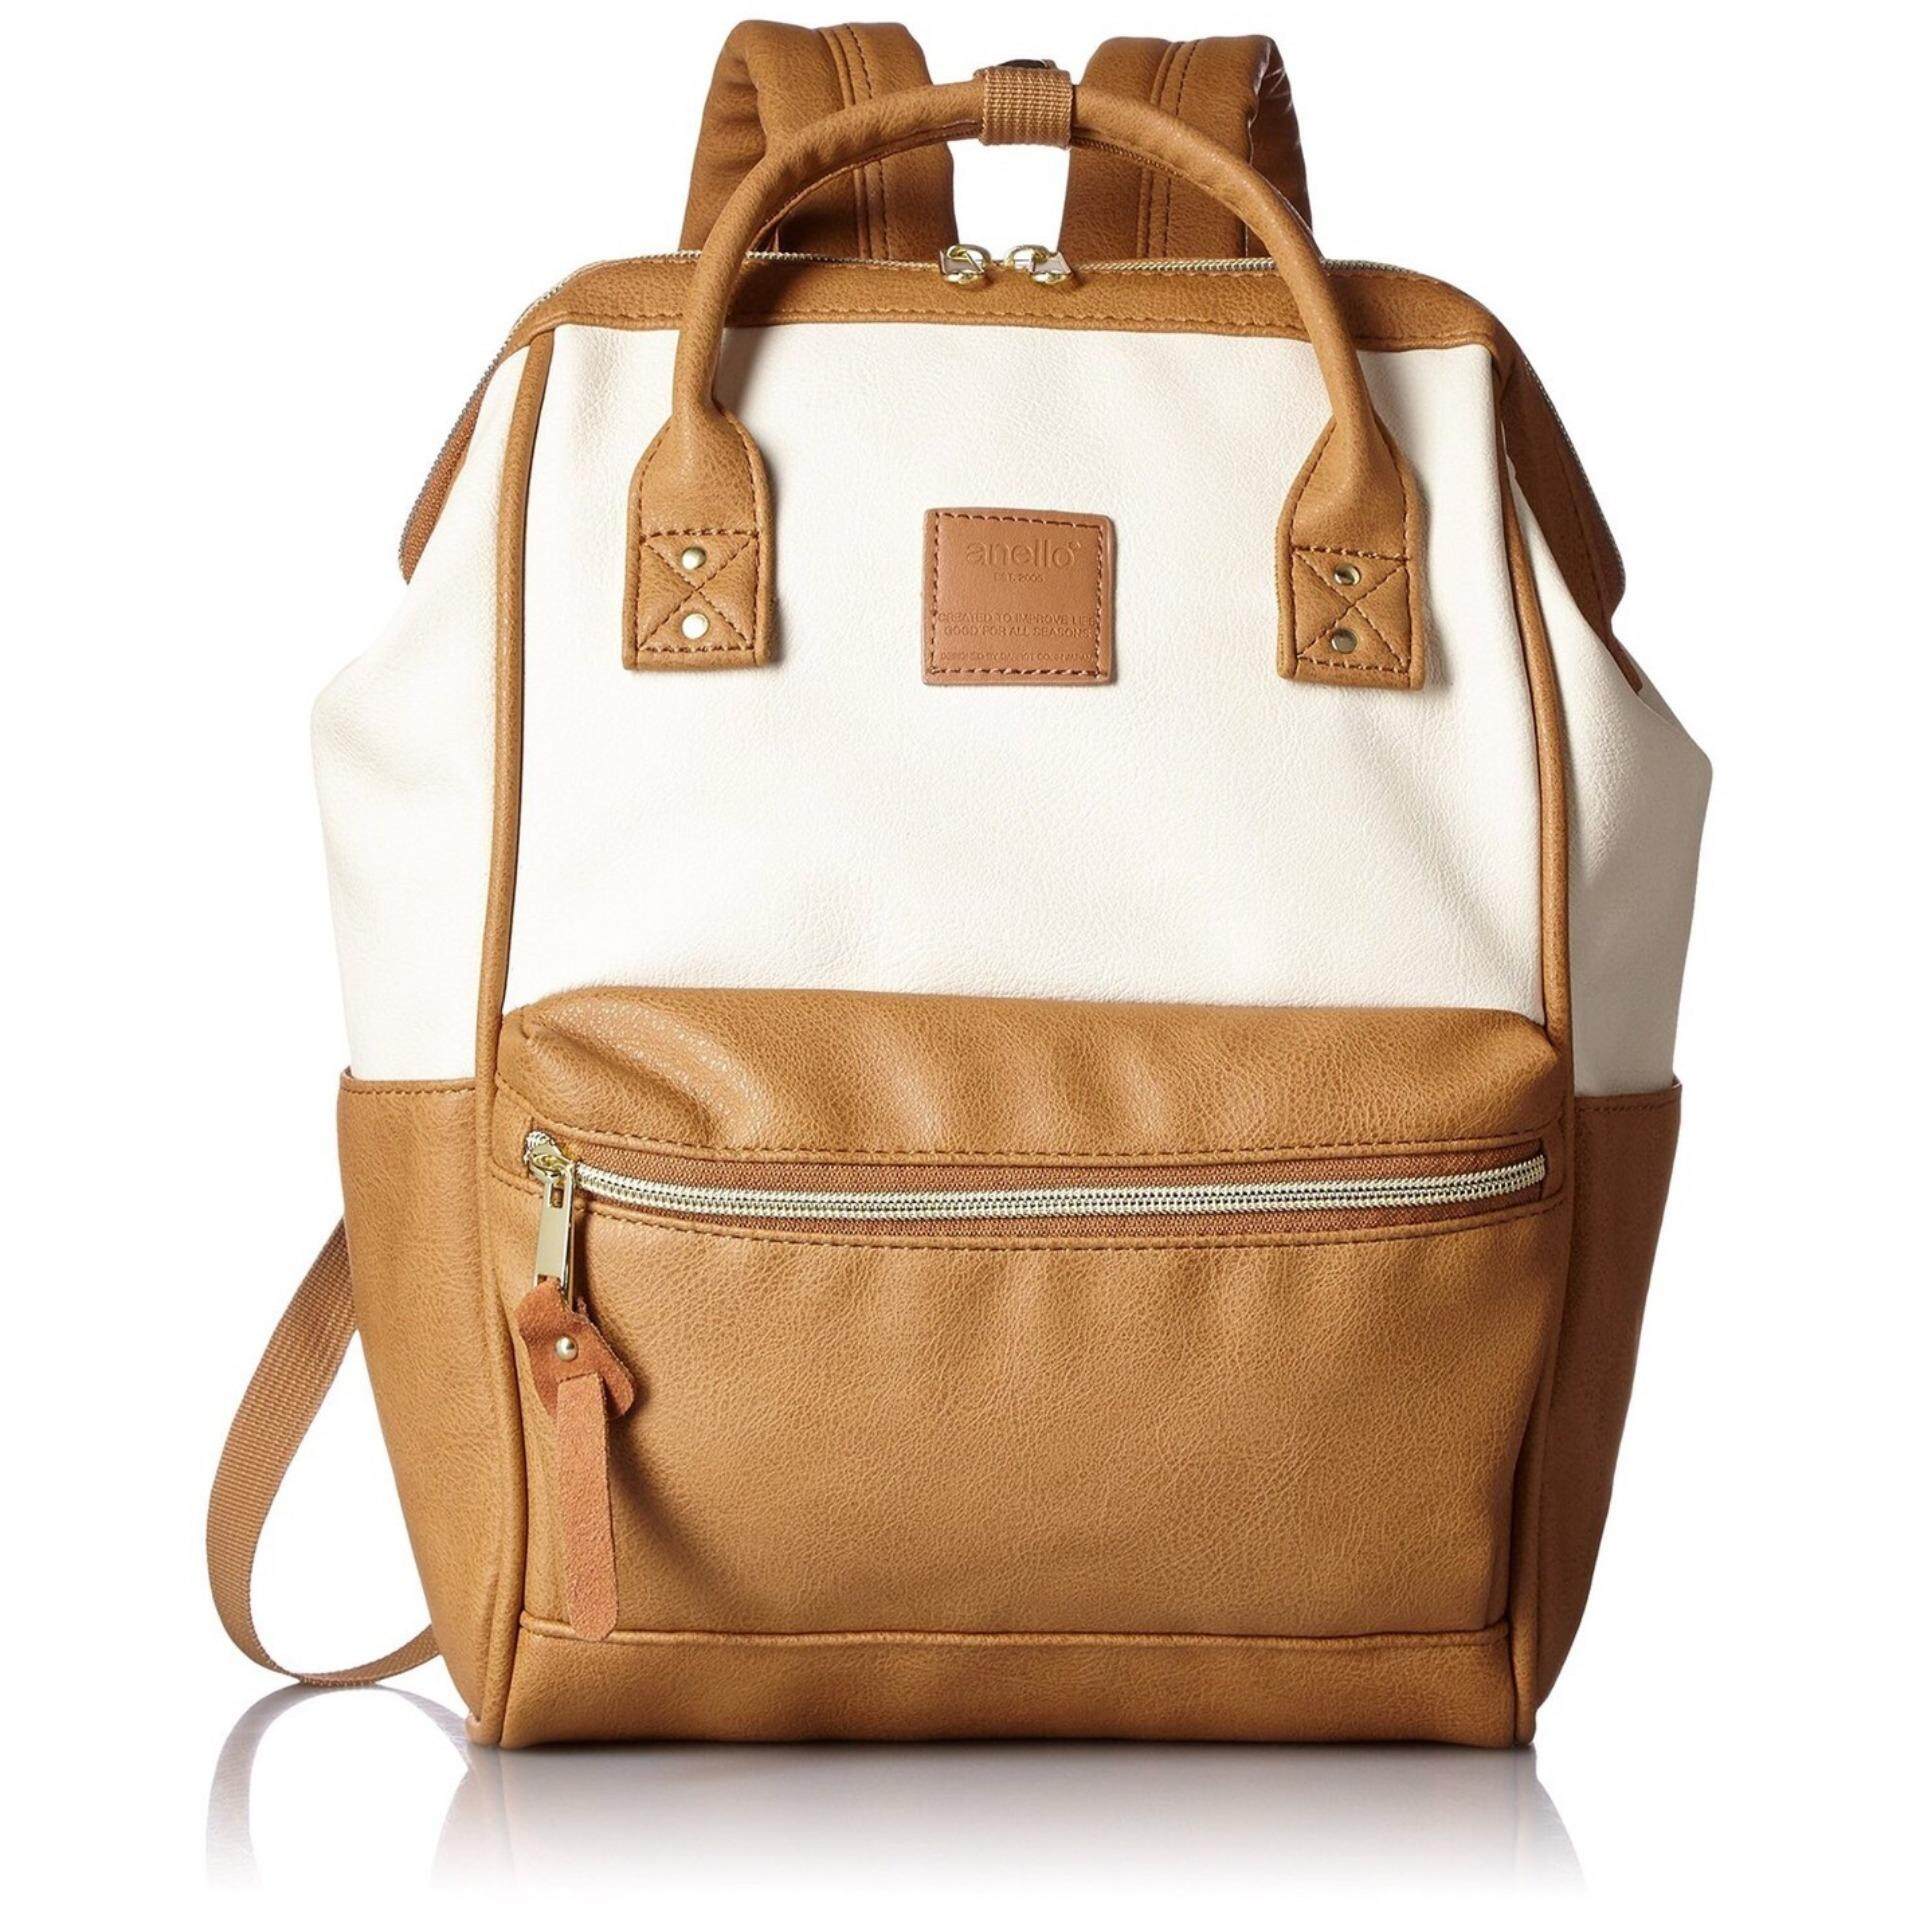  เชียงราย กระเป๋าเป้สะพายหลัง Anello PU Backpack Rucksack Ivory/Camel Beige (Mini Size) - Japan Imported 100%